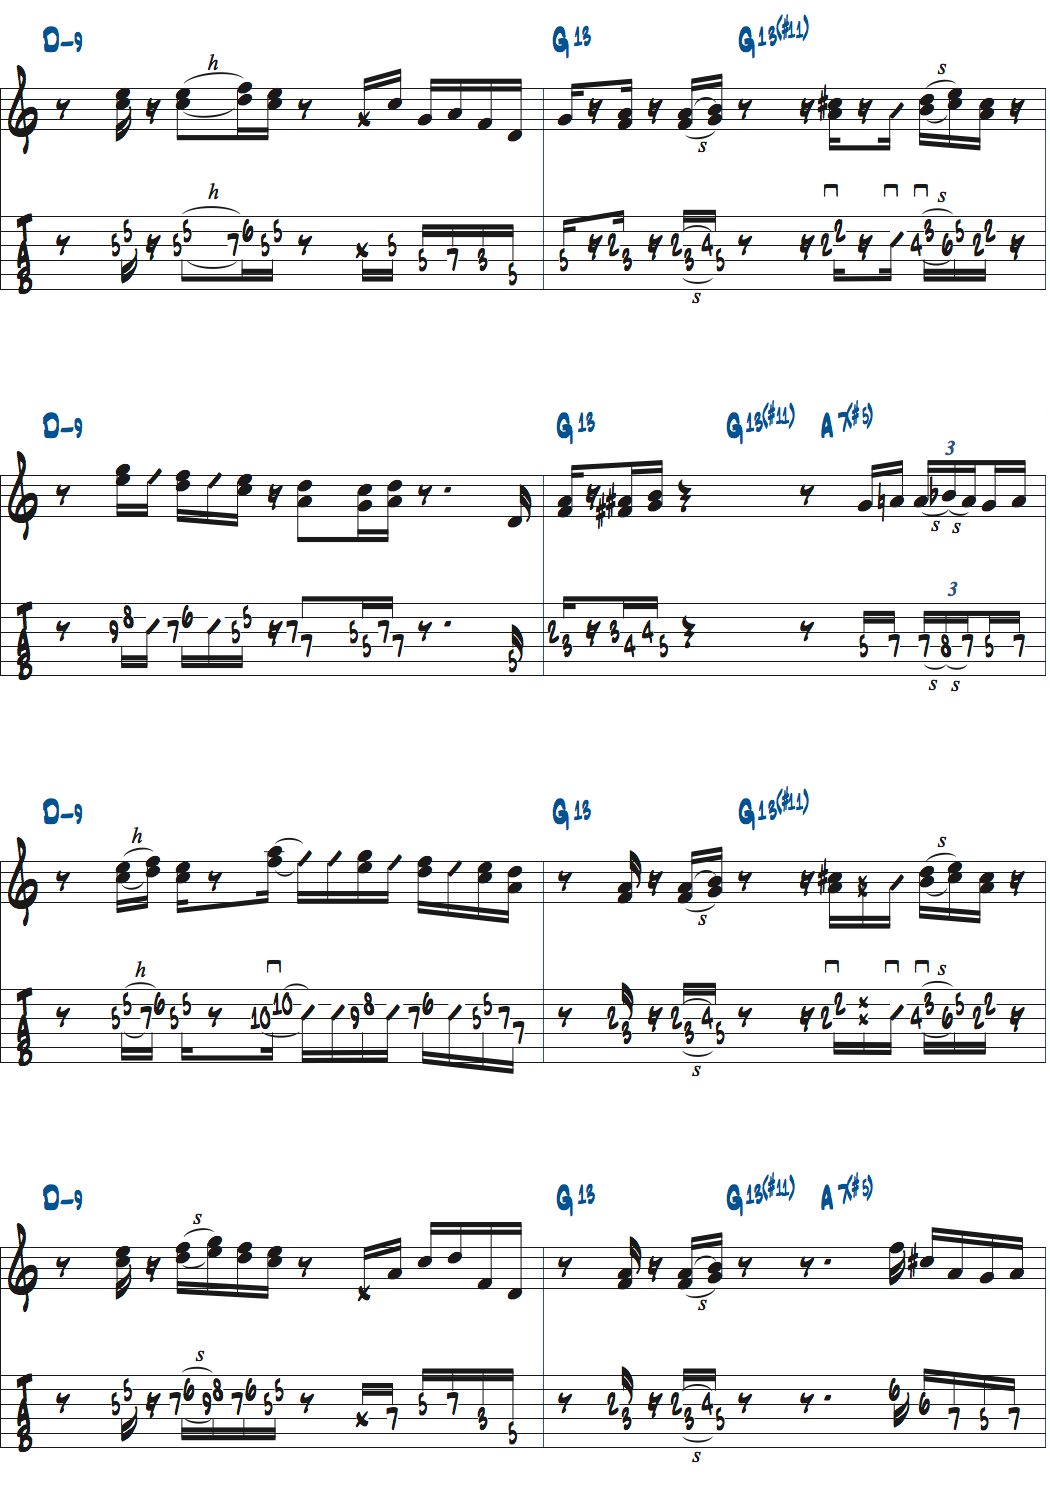 ポールジャクソンジュニアが弾くDm9-G13(#11)-A7+5のコードトーンを使ったバッキング楽譜ページ2